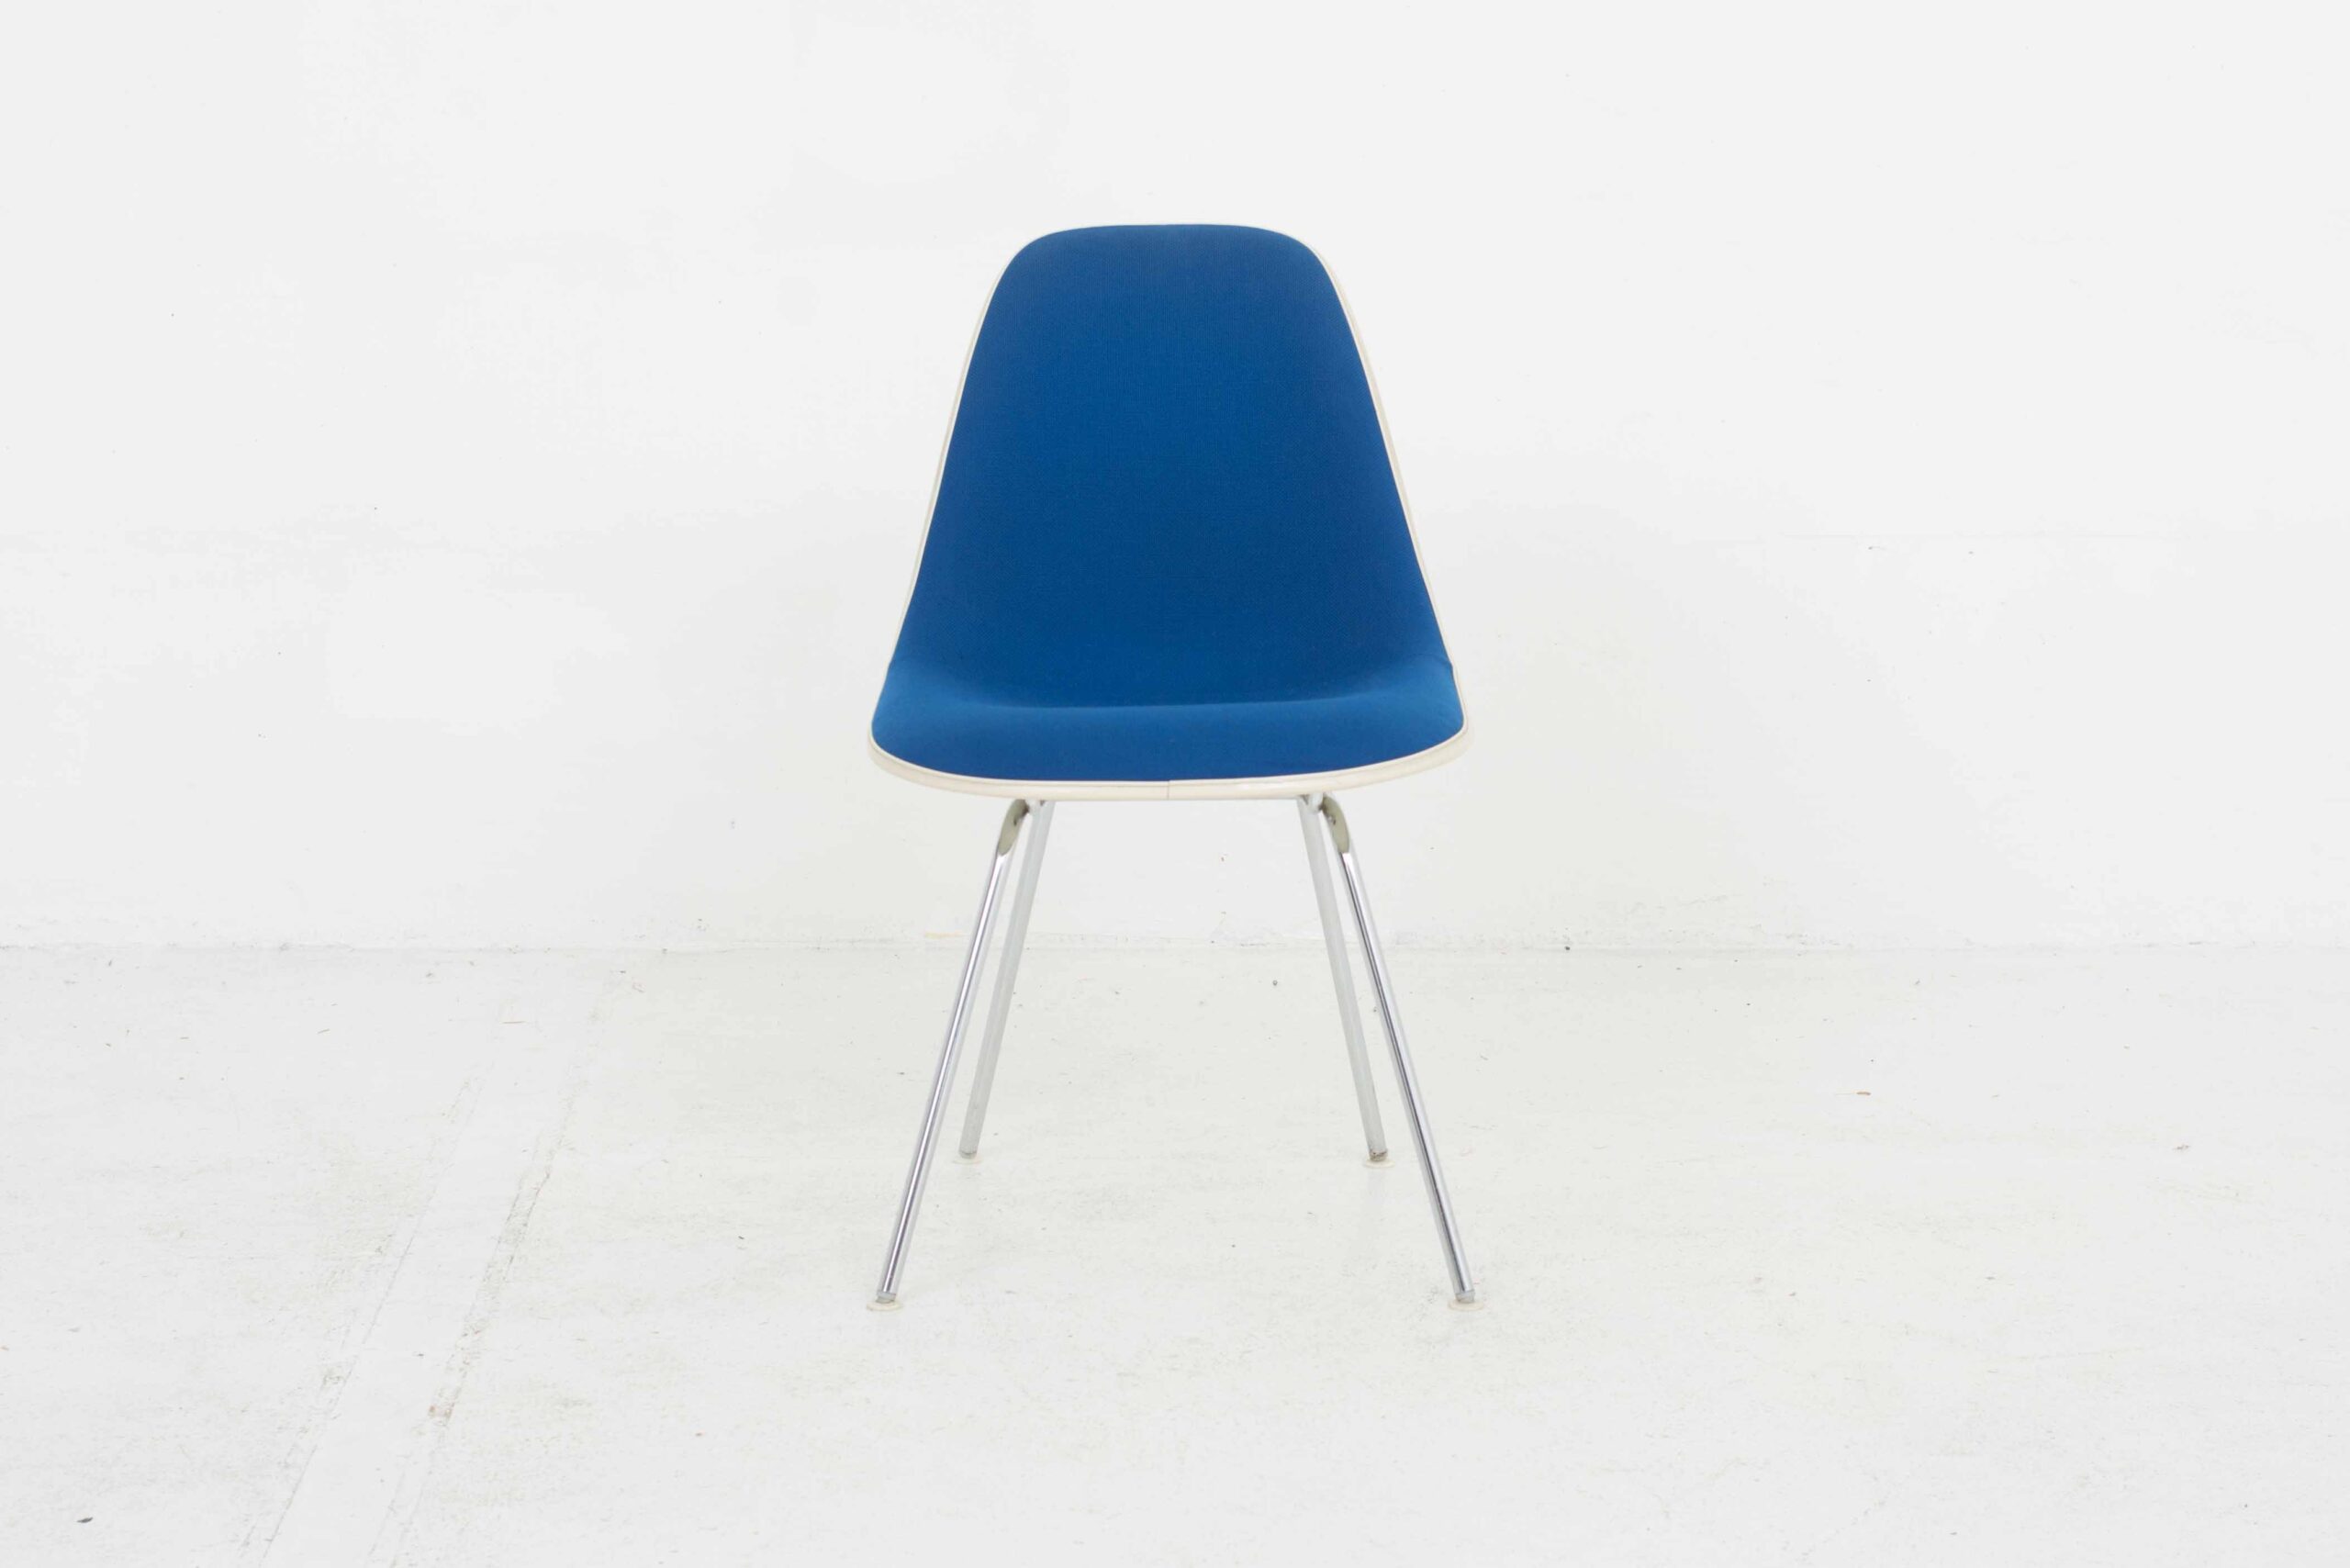 Eames Fiberglas Side Chairs von Vitra / Hermann Miller, im Viererset-3